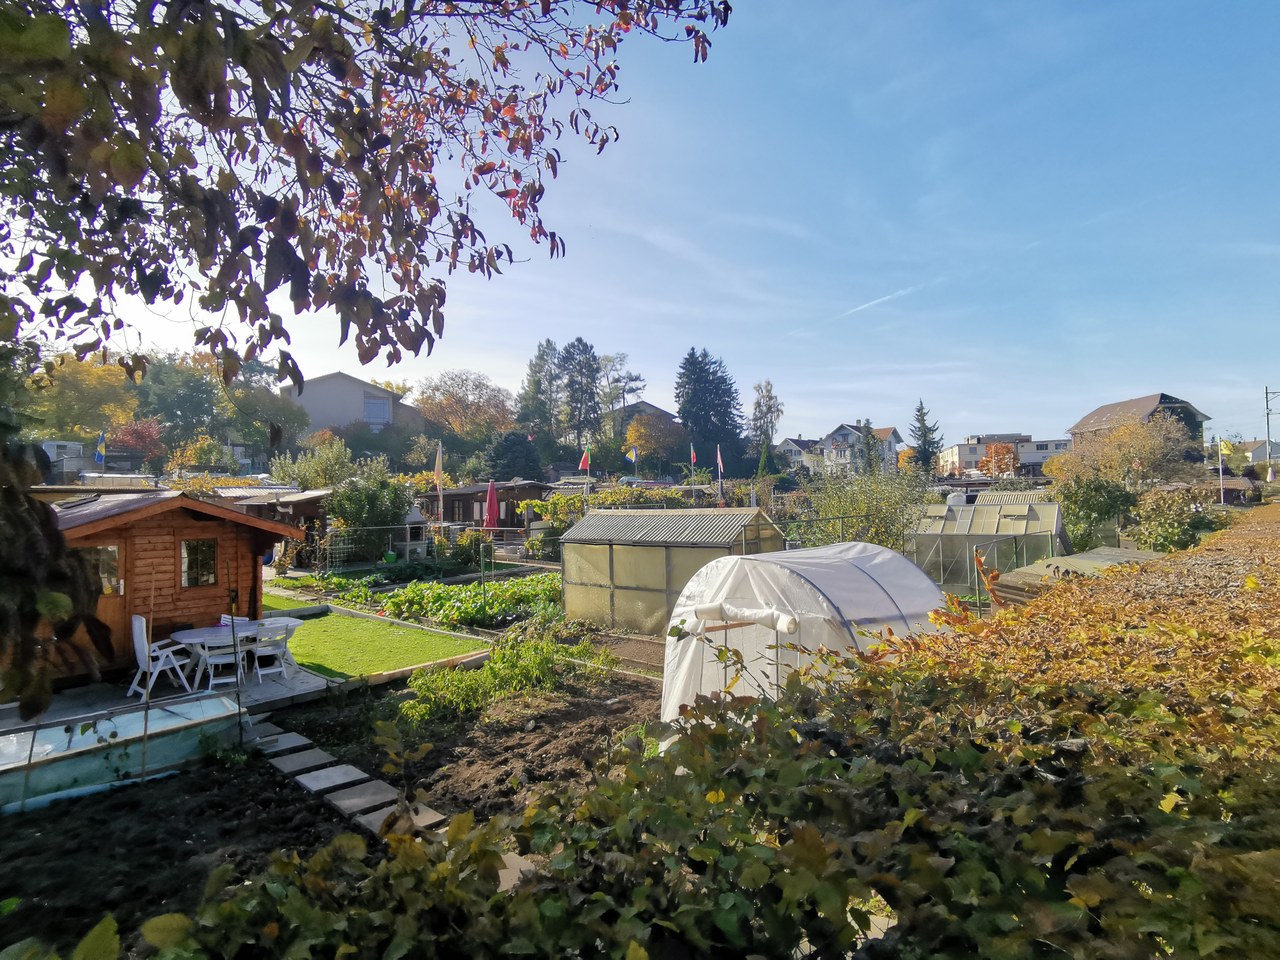 Familiengarten-Areal Ladenwandgut: Kleine Garten-Häuschen umrundet von grünen Pflanzen